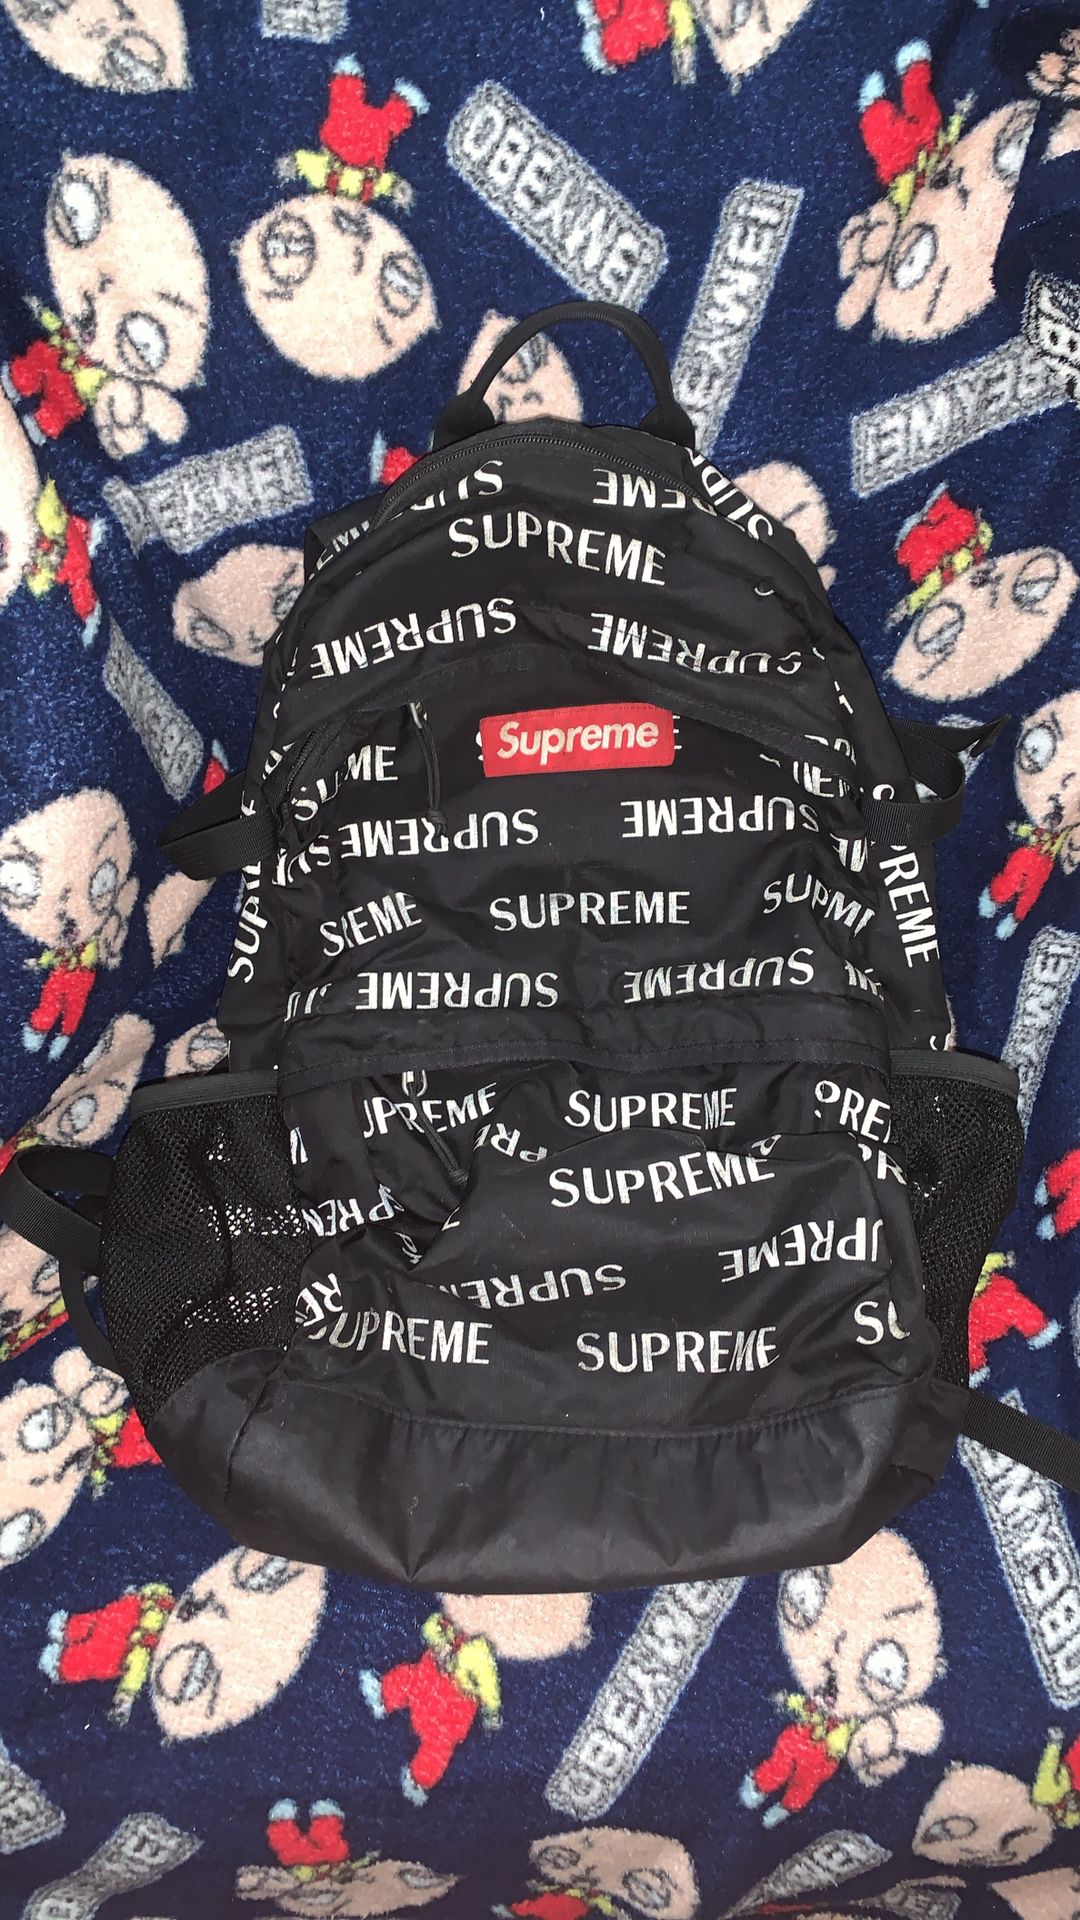 Supreme 3m bag